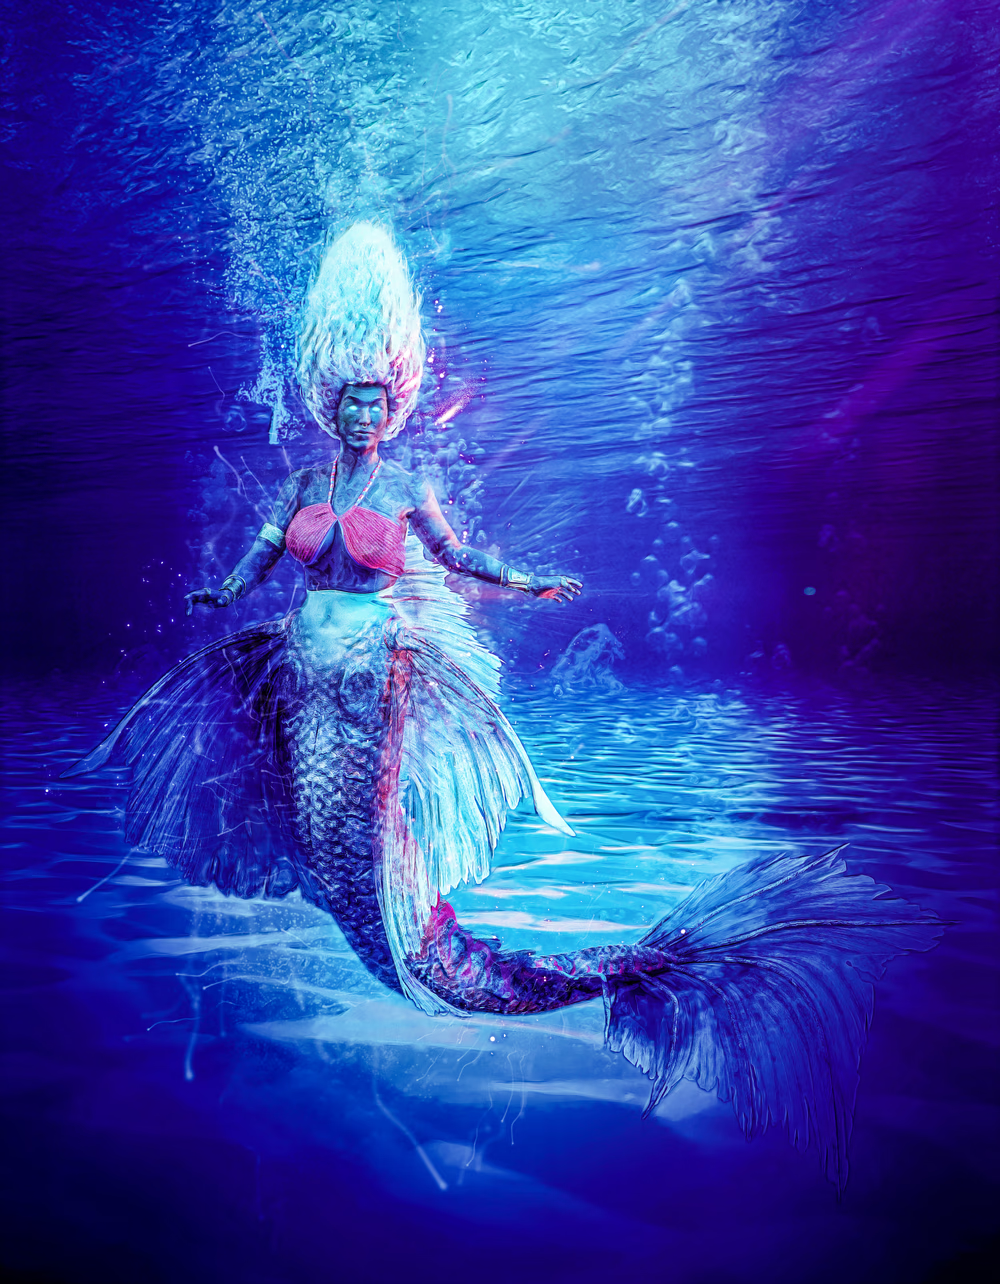 Olokun in the ocean as a mermaid